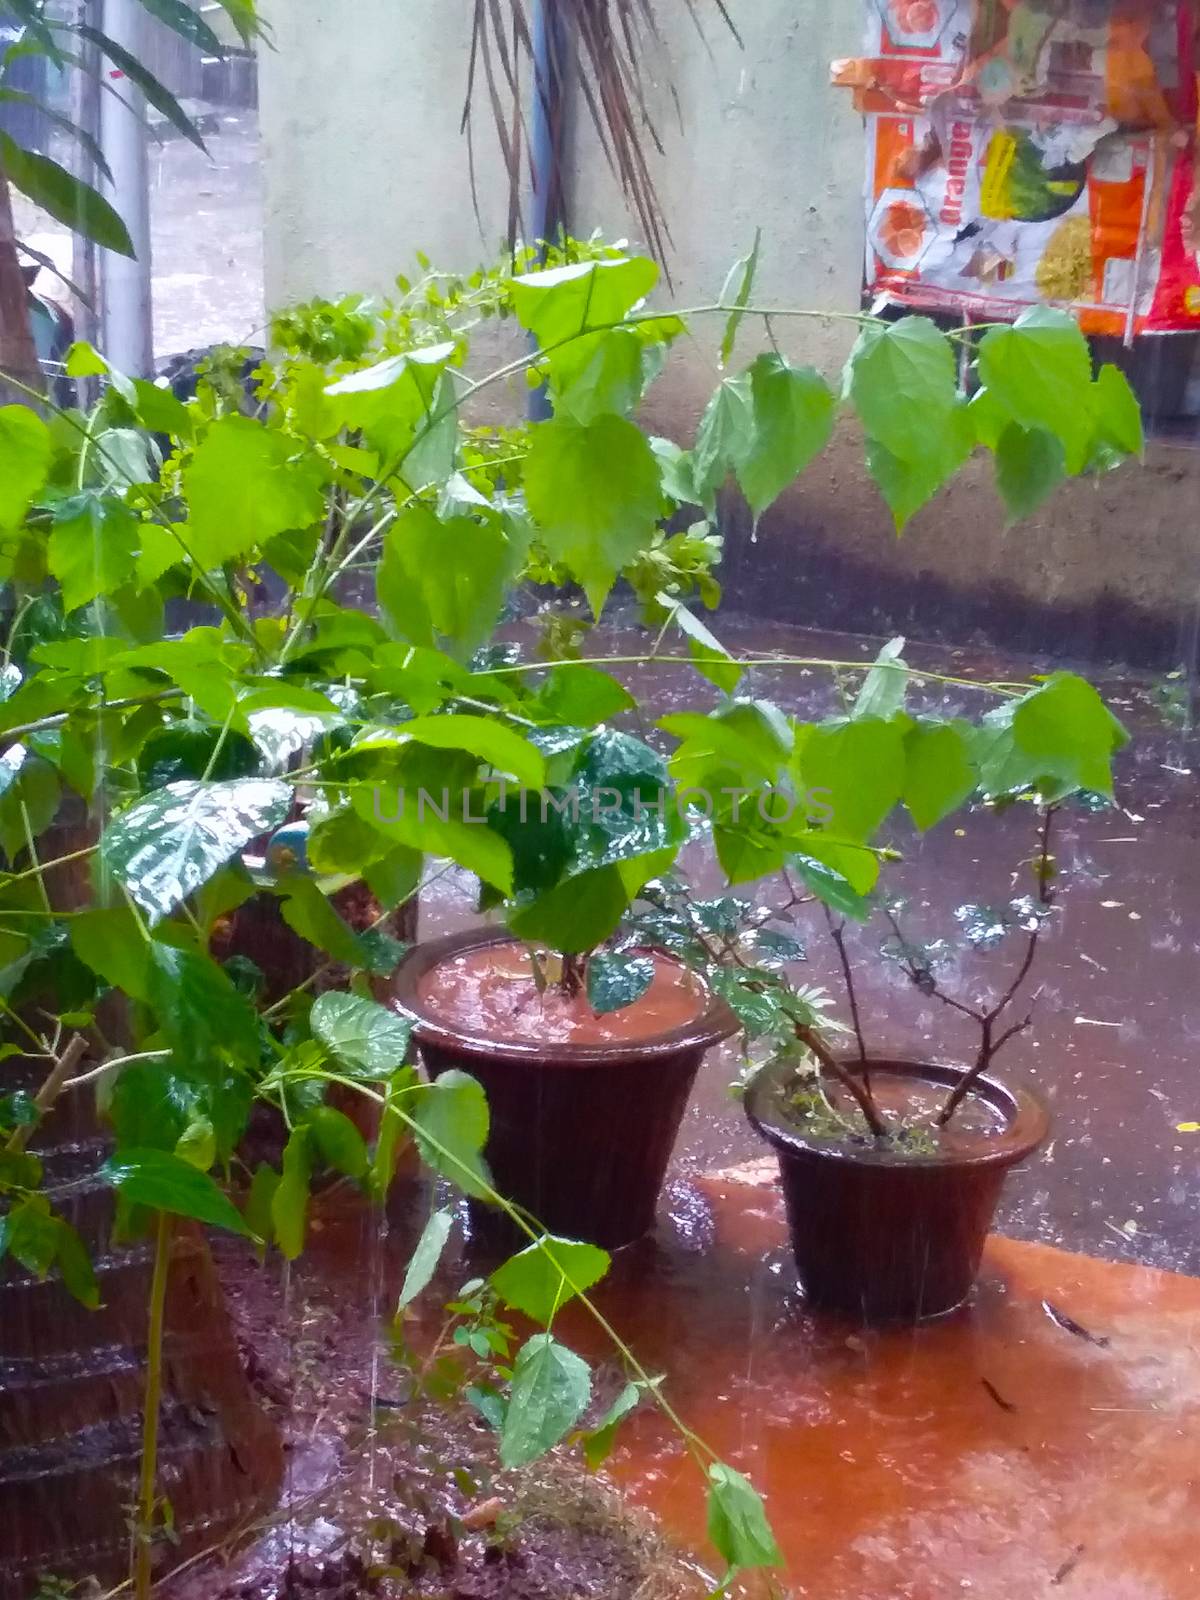 my garden in the rainy season by gswagh71